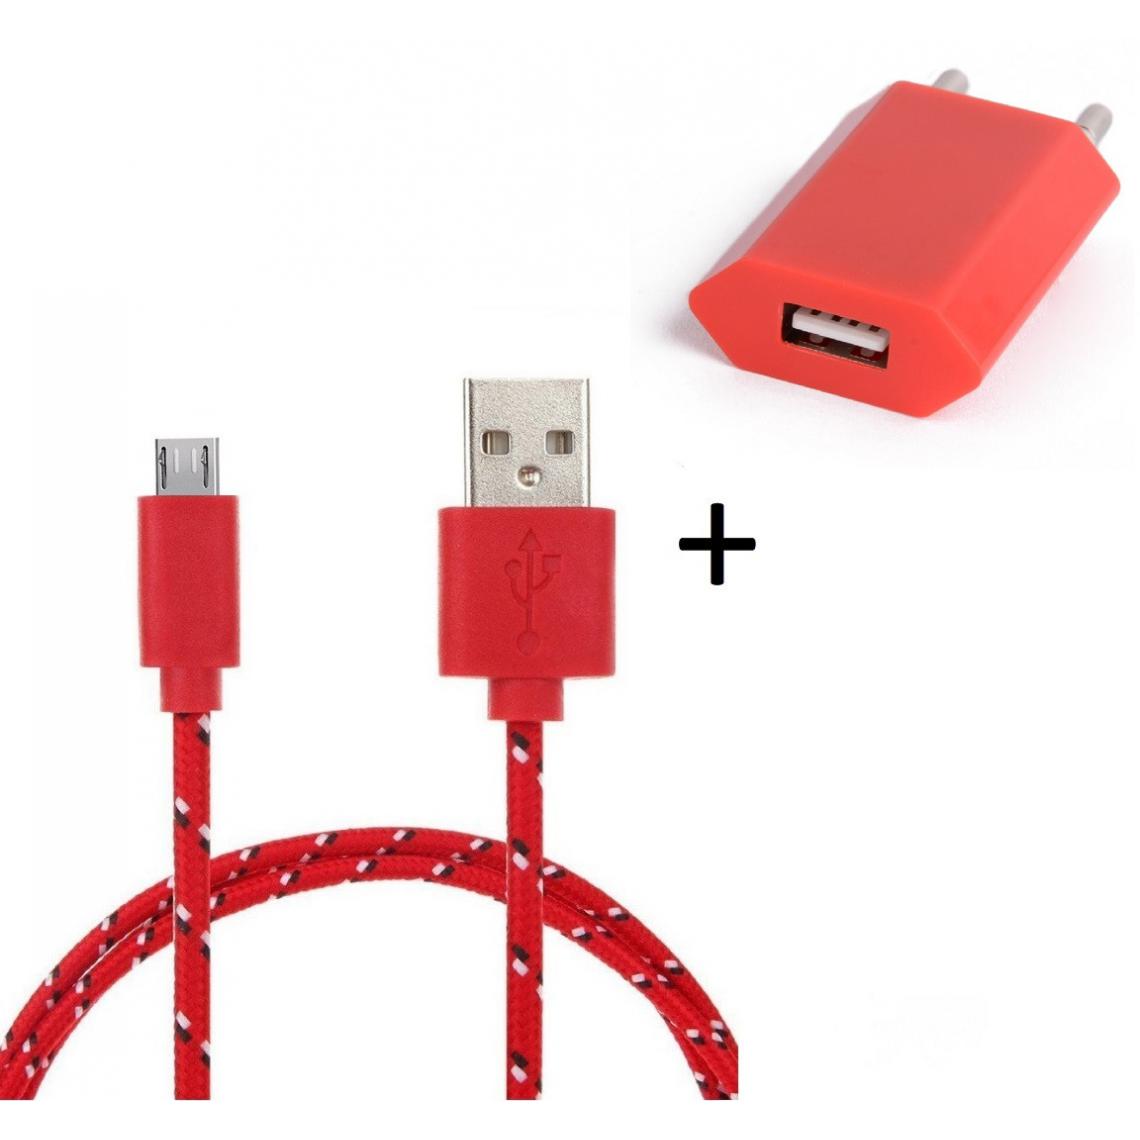 Shot - Pack Chargeur pour HUAWEI P smart+ 2019 Smartphone Micro USB (Cable Tresse 3m Chargeur + Prise Secteur USB) Murale Android (ROUGE) - Chargeur secteur téléphone